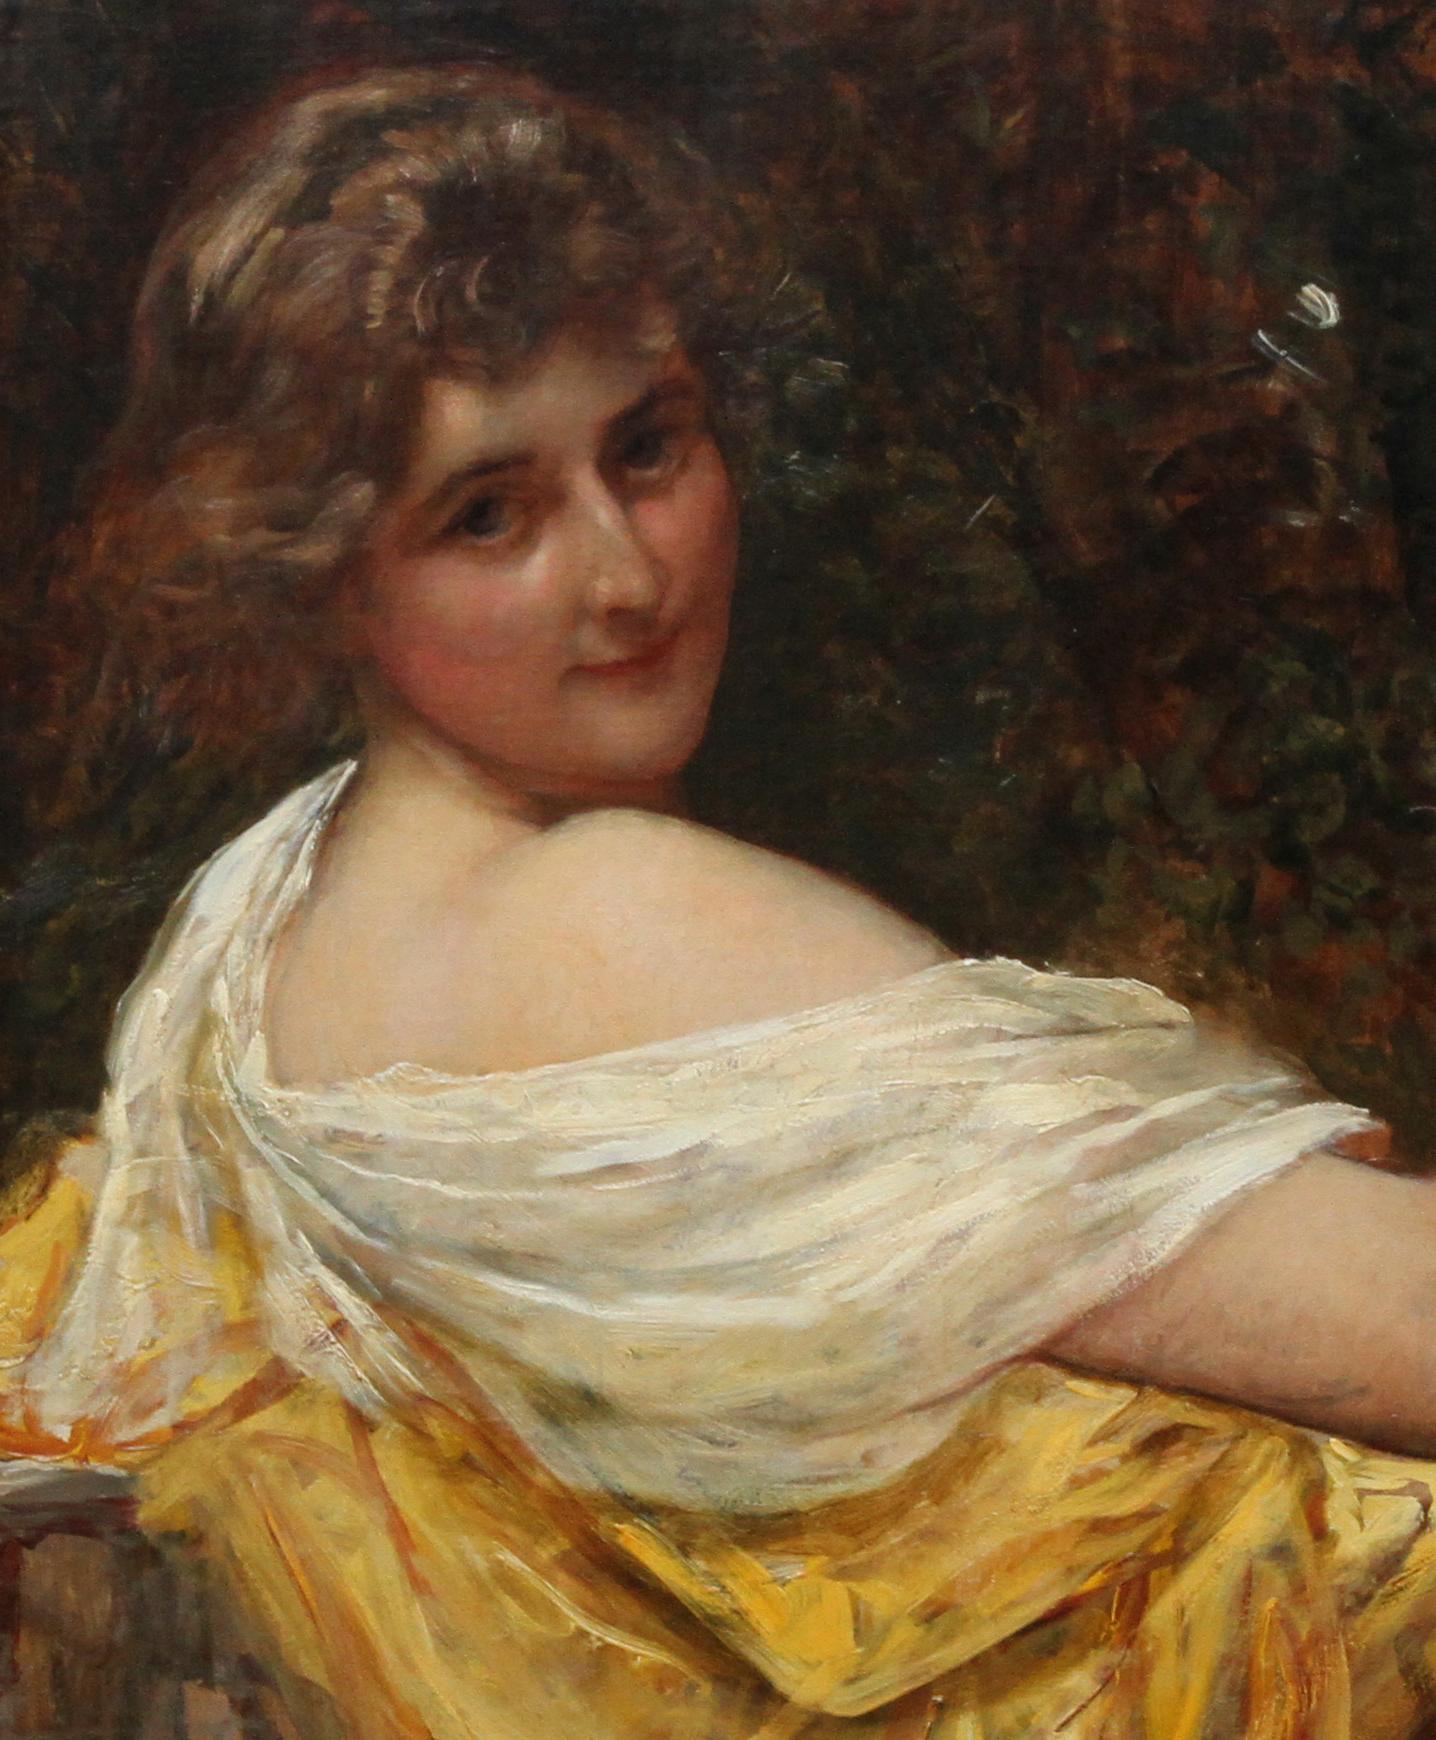 Porträt einer jungen Dame in einem gelben Kleid – britisches viktorianisches Ölgemälde  (Impressionismus), Painting, von Sir William Blake Richmond